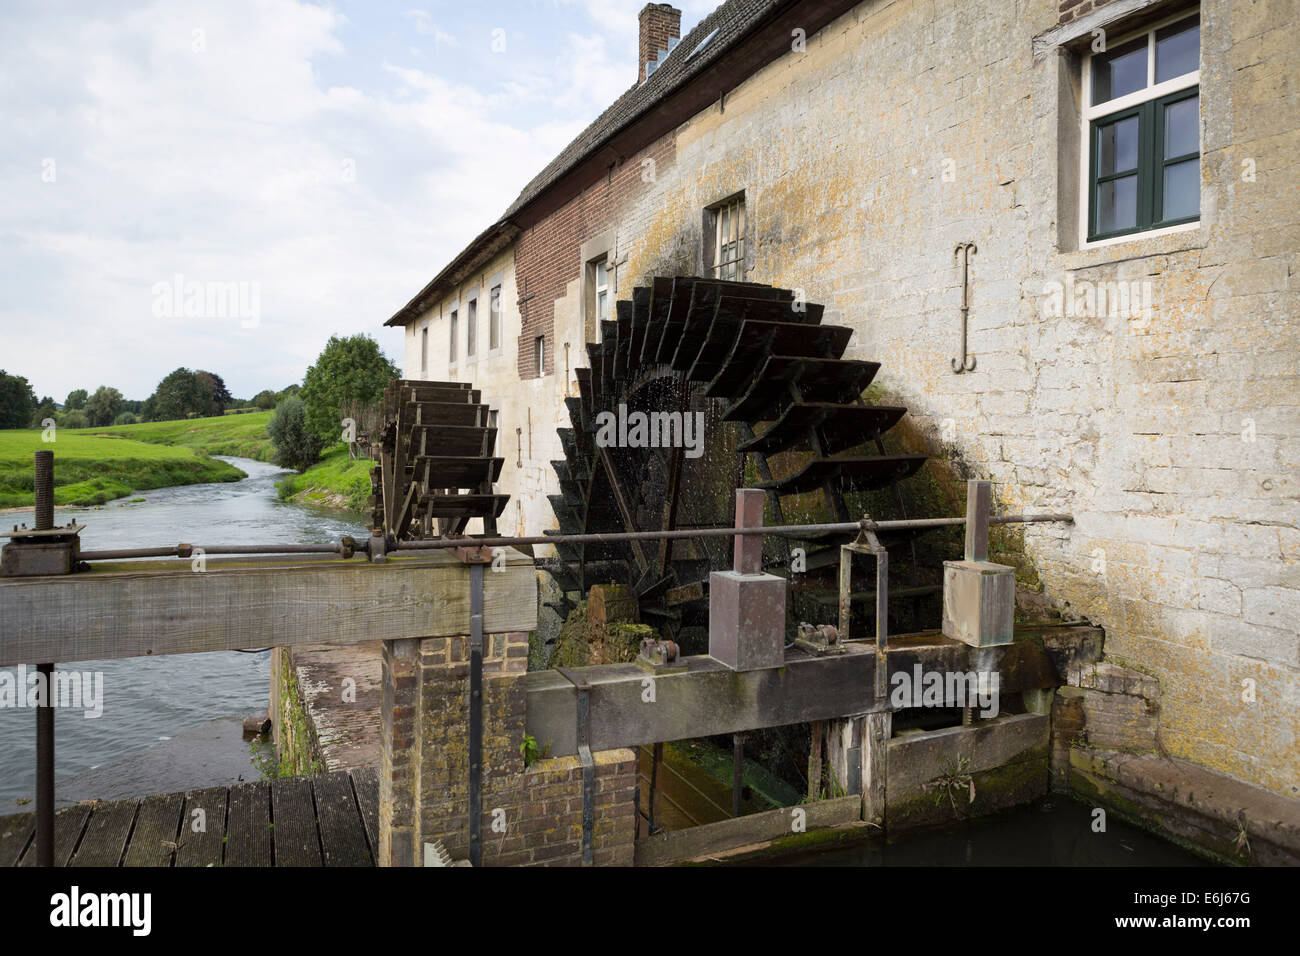 Storico mulino ad acqua olandese al giorno d'oggi la produzione di elettricità, costruito nel 1776, villaggio Wijlre, Noord-Limburg, Paesi Bassi. Foto Stock